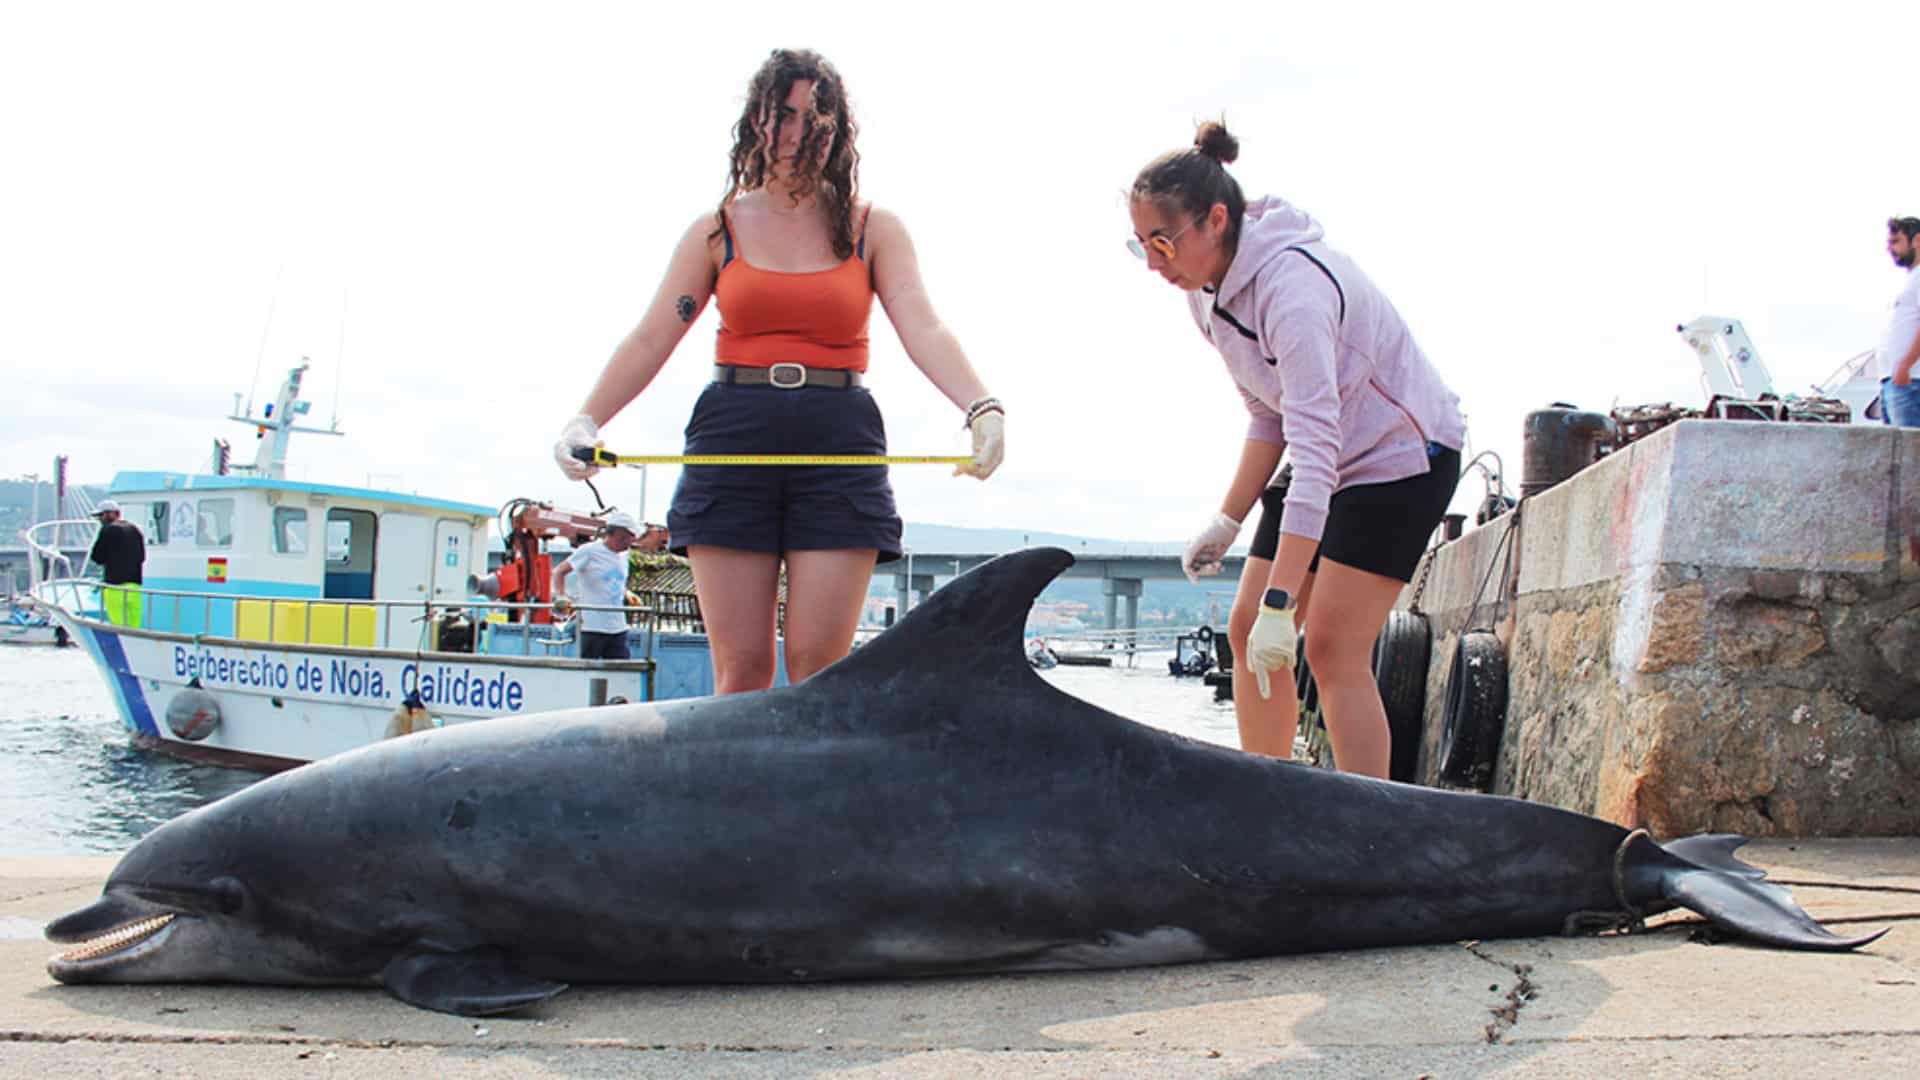 El arroaz localizado muerto en Noia | CEMMA